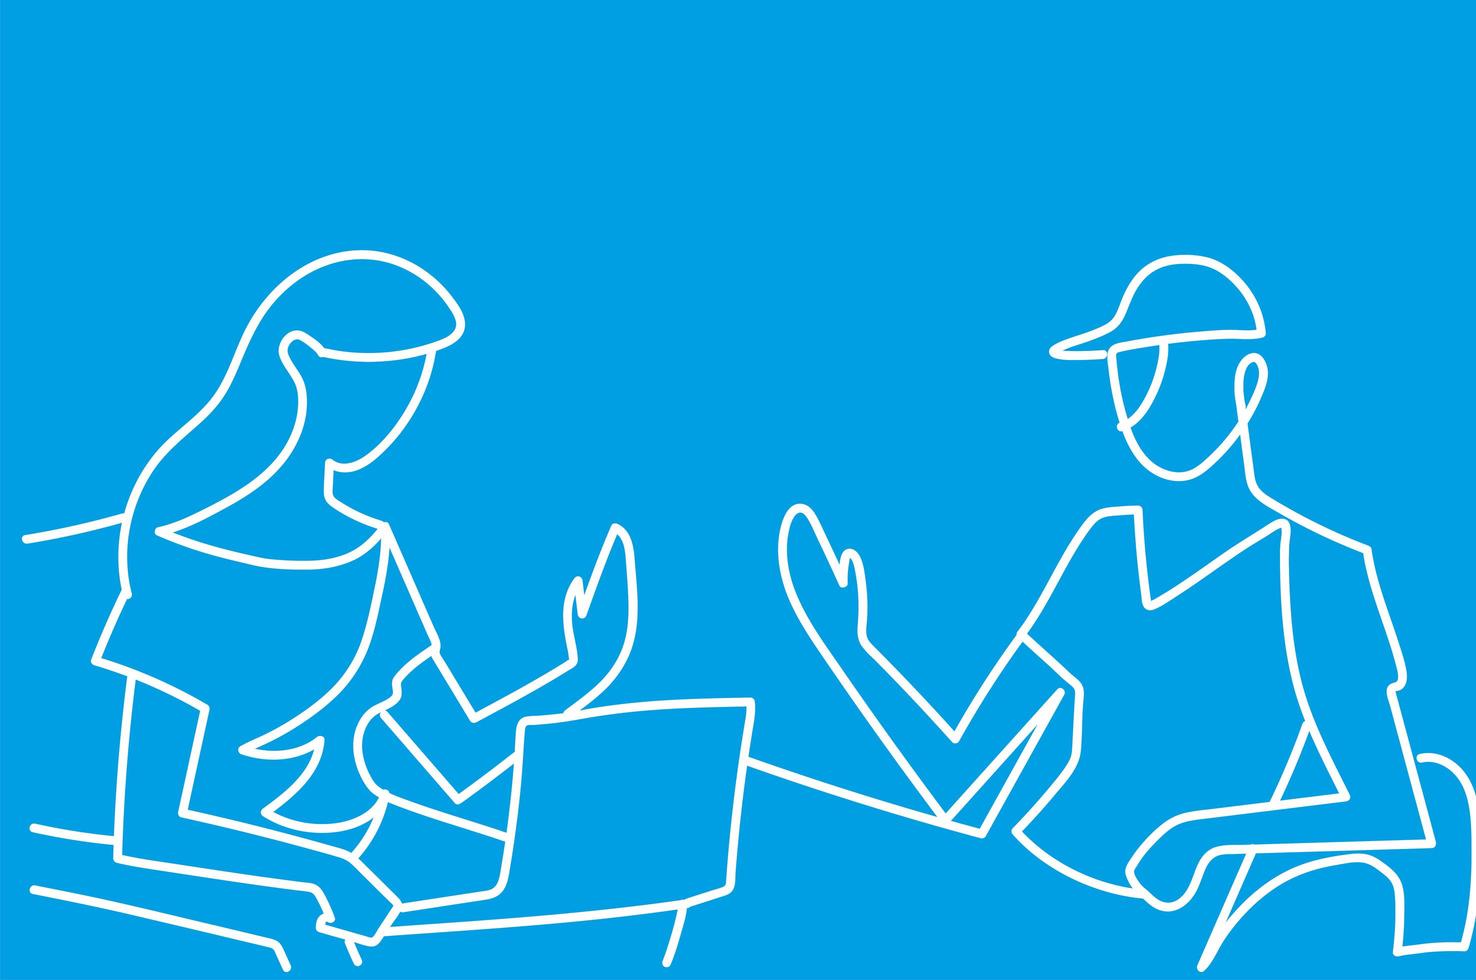 mujer con laptop y hombre con gorra deportiva juntos estilo de línea continua de fondo azul vector